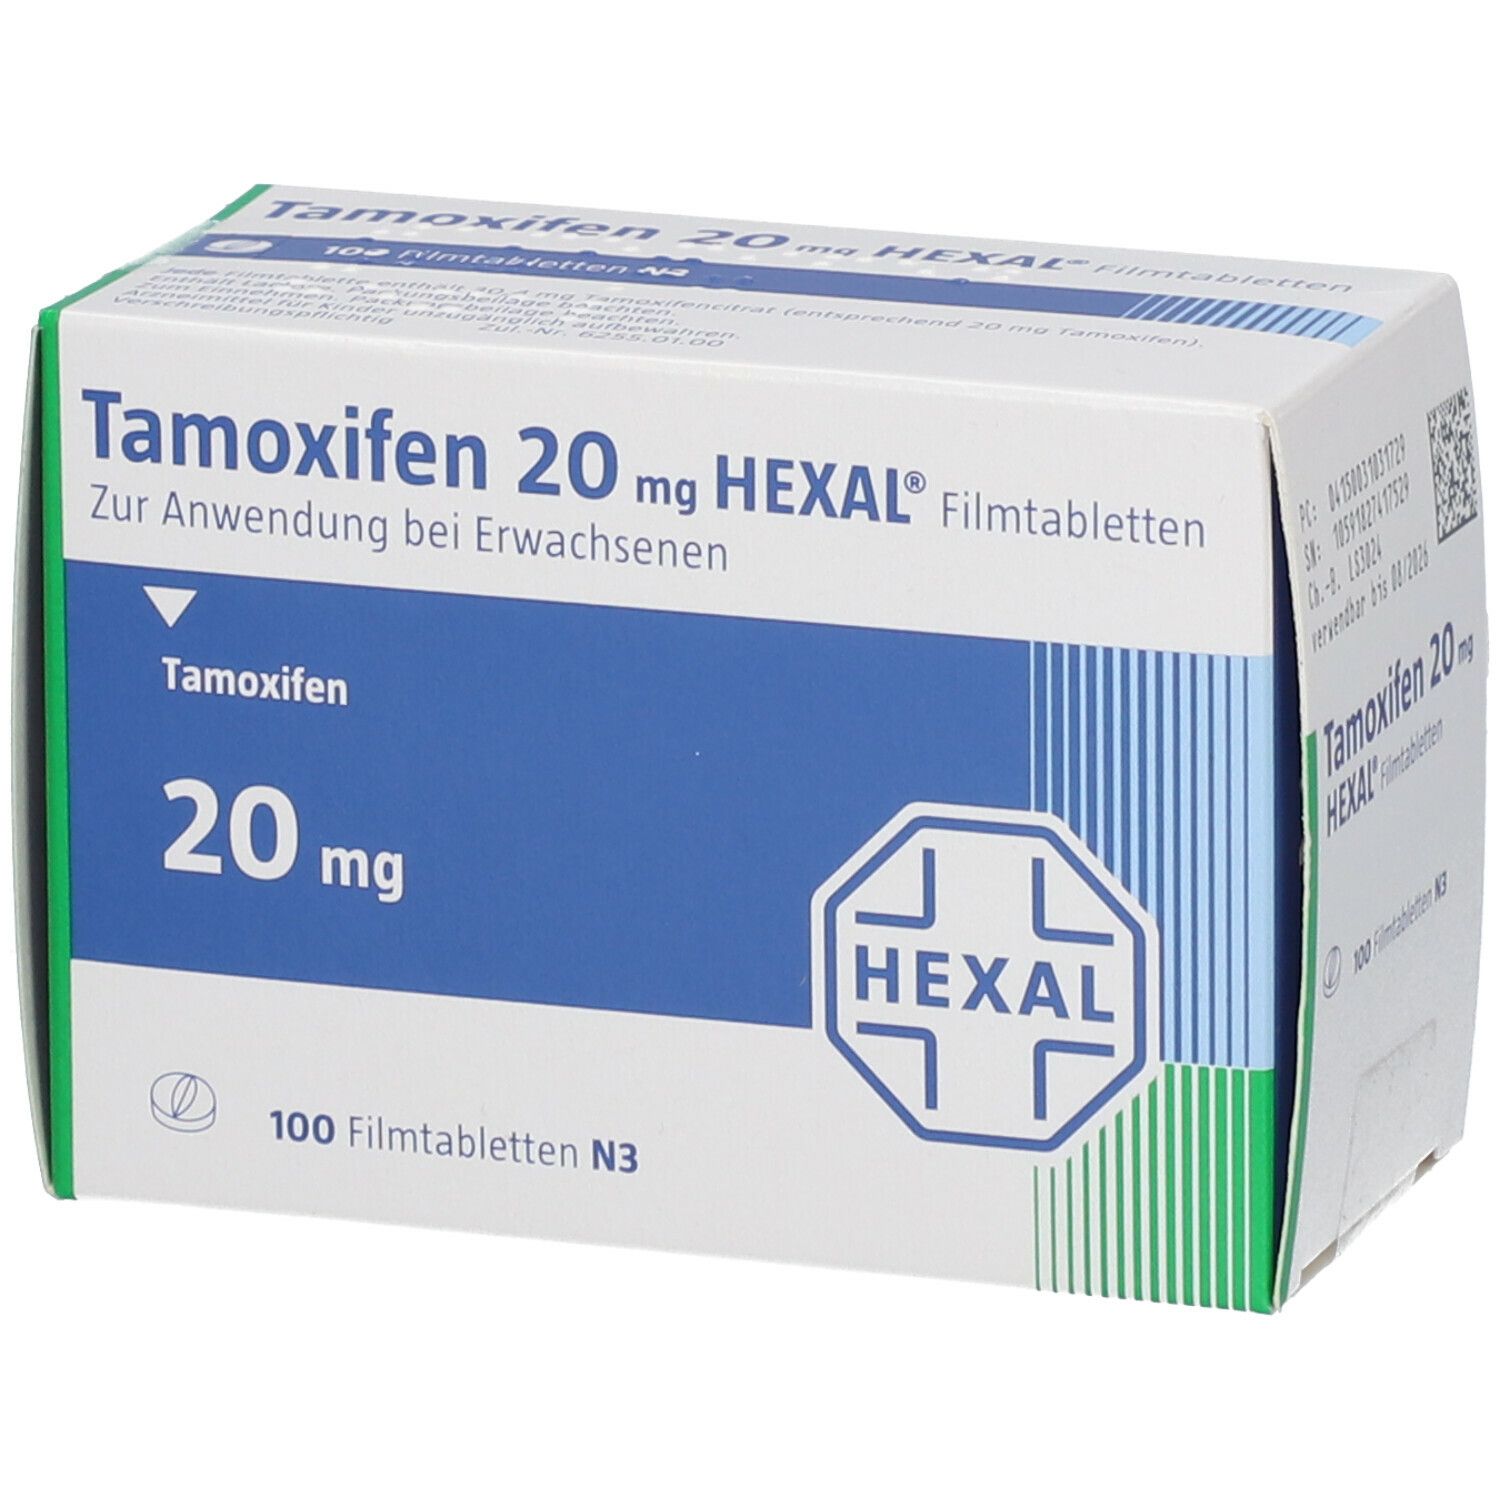 Dosierung und Wirkung von Tamoxifen 20 mg